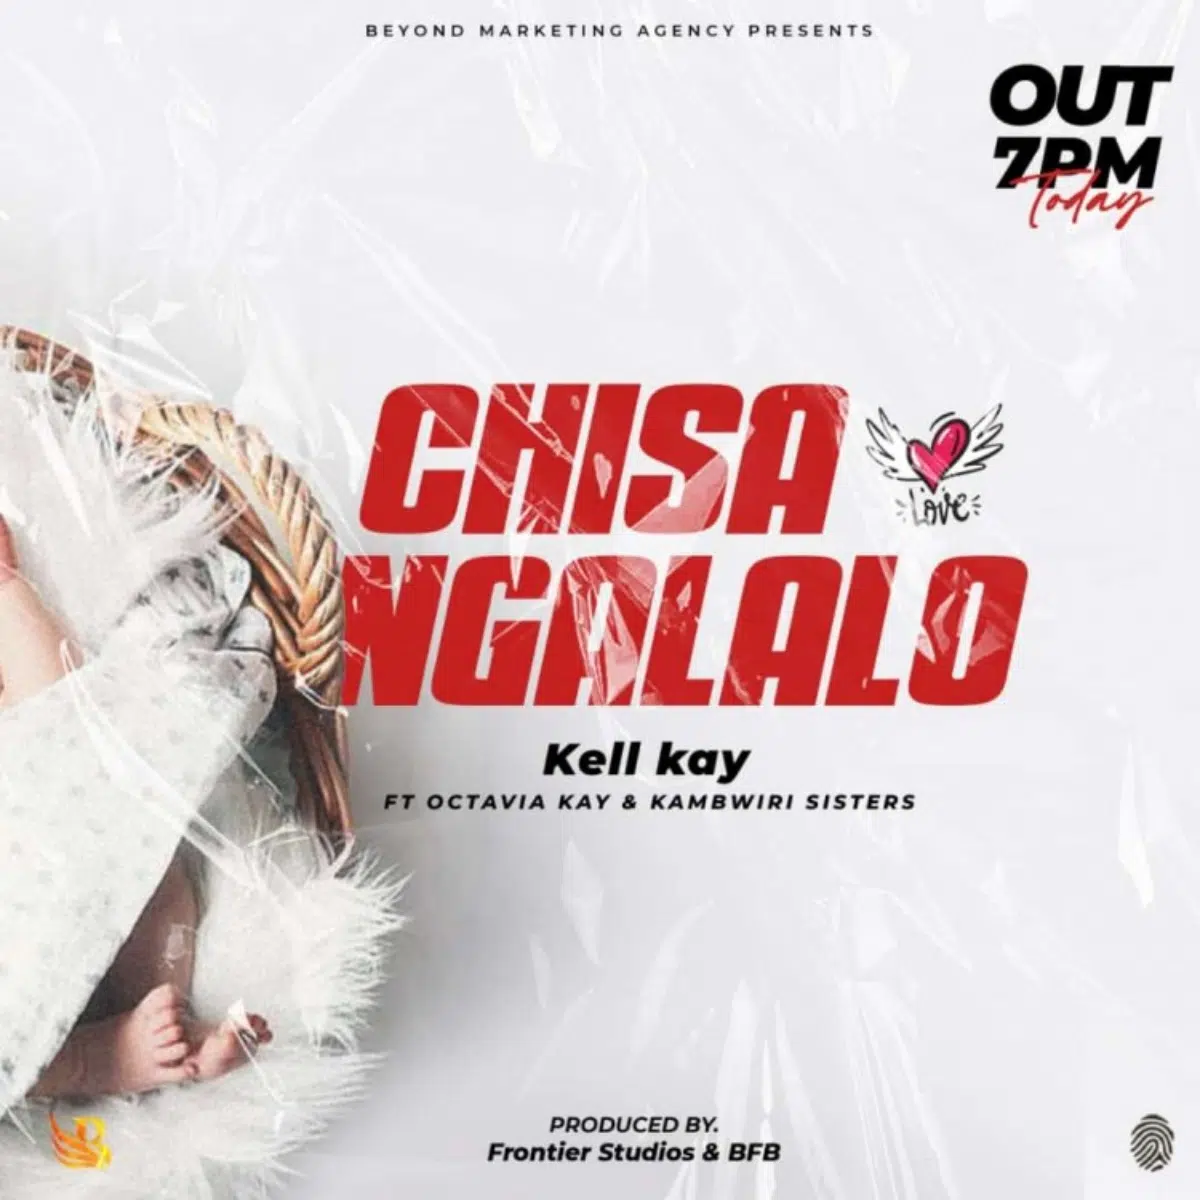 DOWNLOAD: Kell kay Feat Octavia Kay & Kambwiri Sisters – “Chisangalalo” (Because of you) Mp3